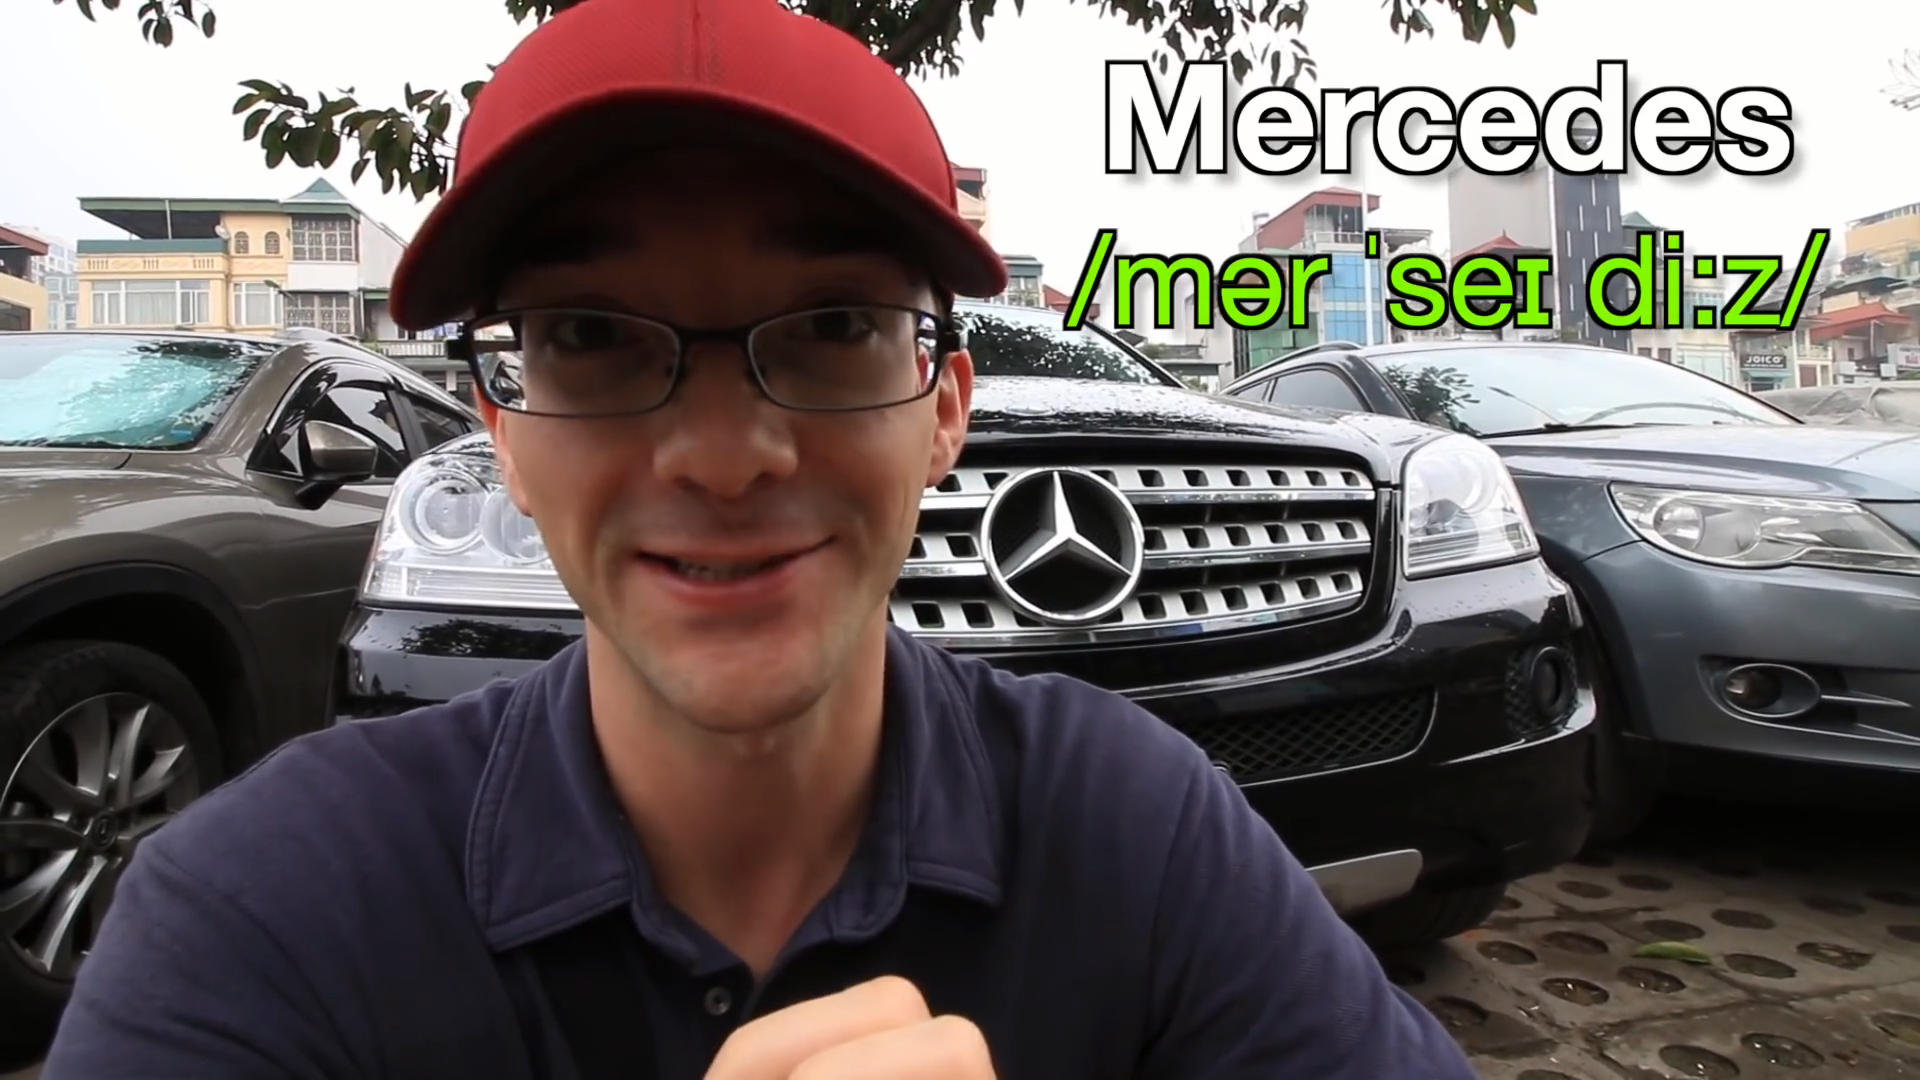 Mua Bán Xe Mercedes Benz E Class 2013 Giá Rẻ Toàn quốc